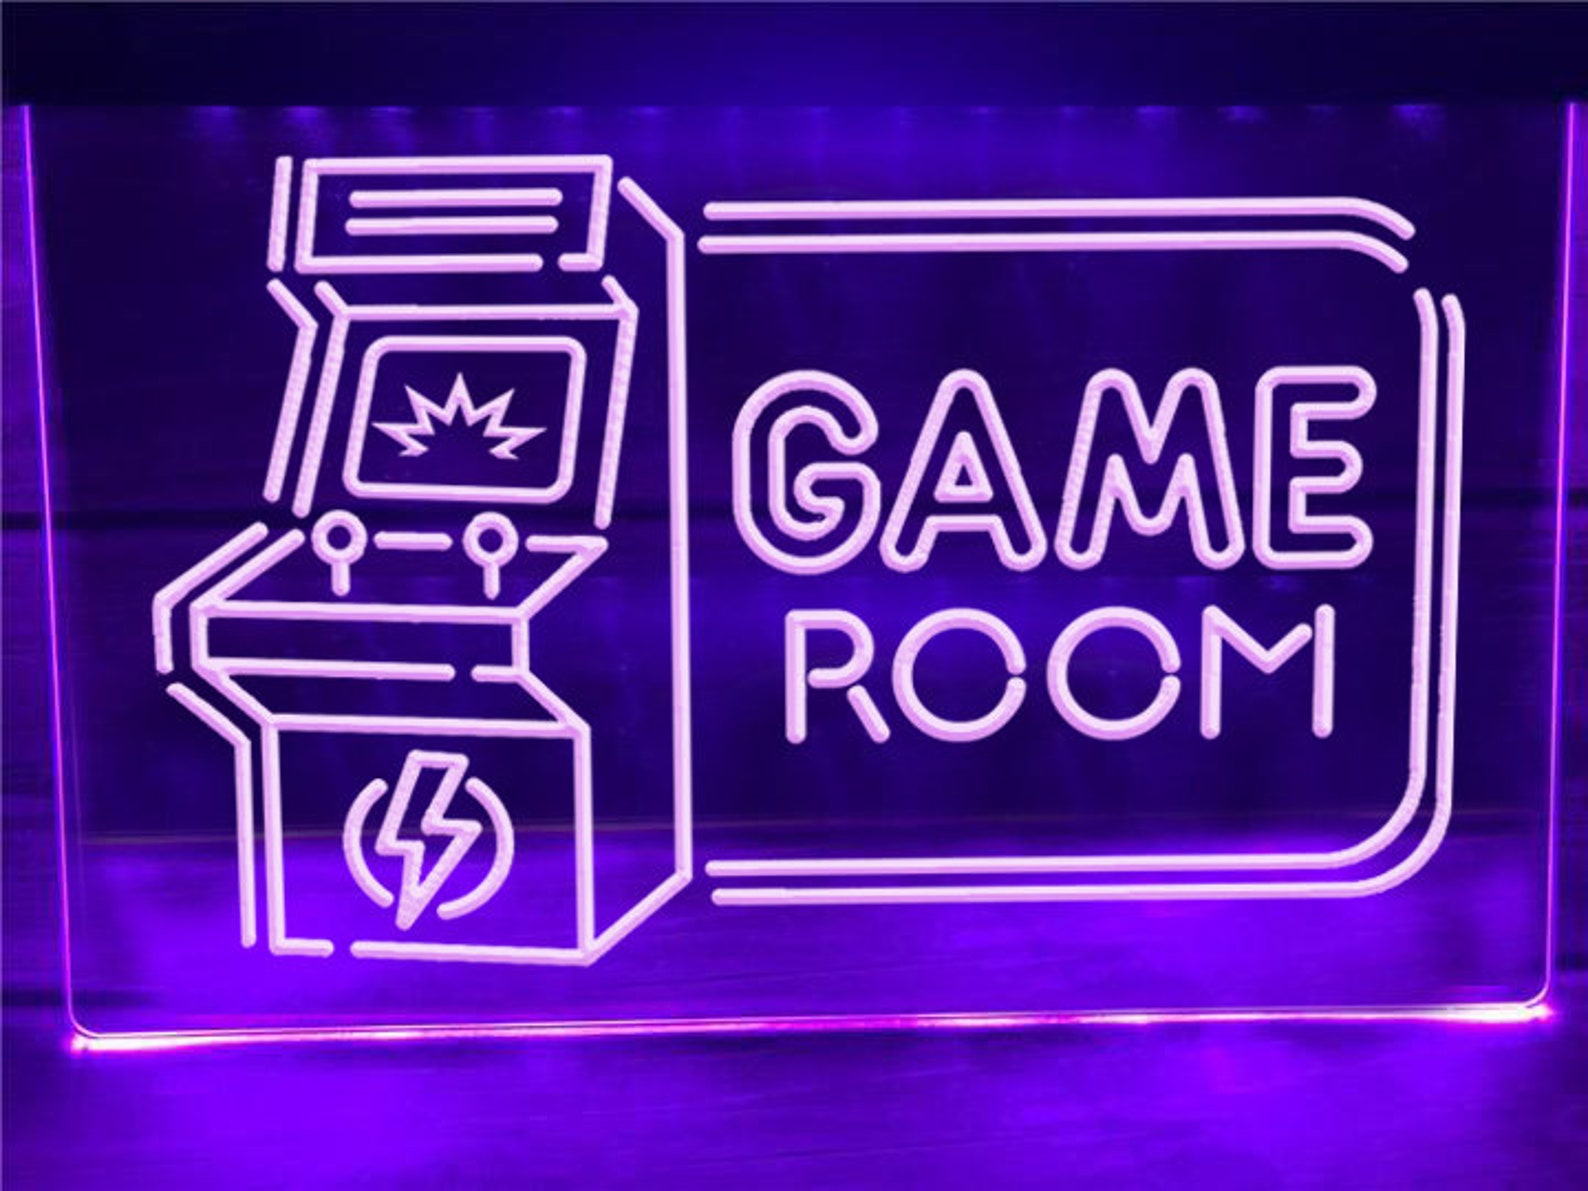 Gameroom Led Sign For Bedroom Decor